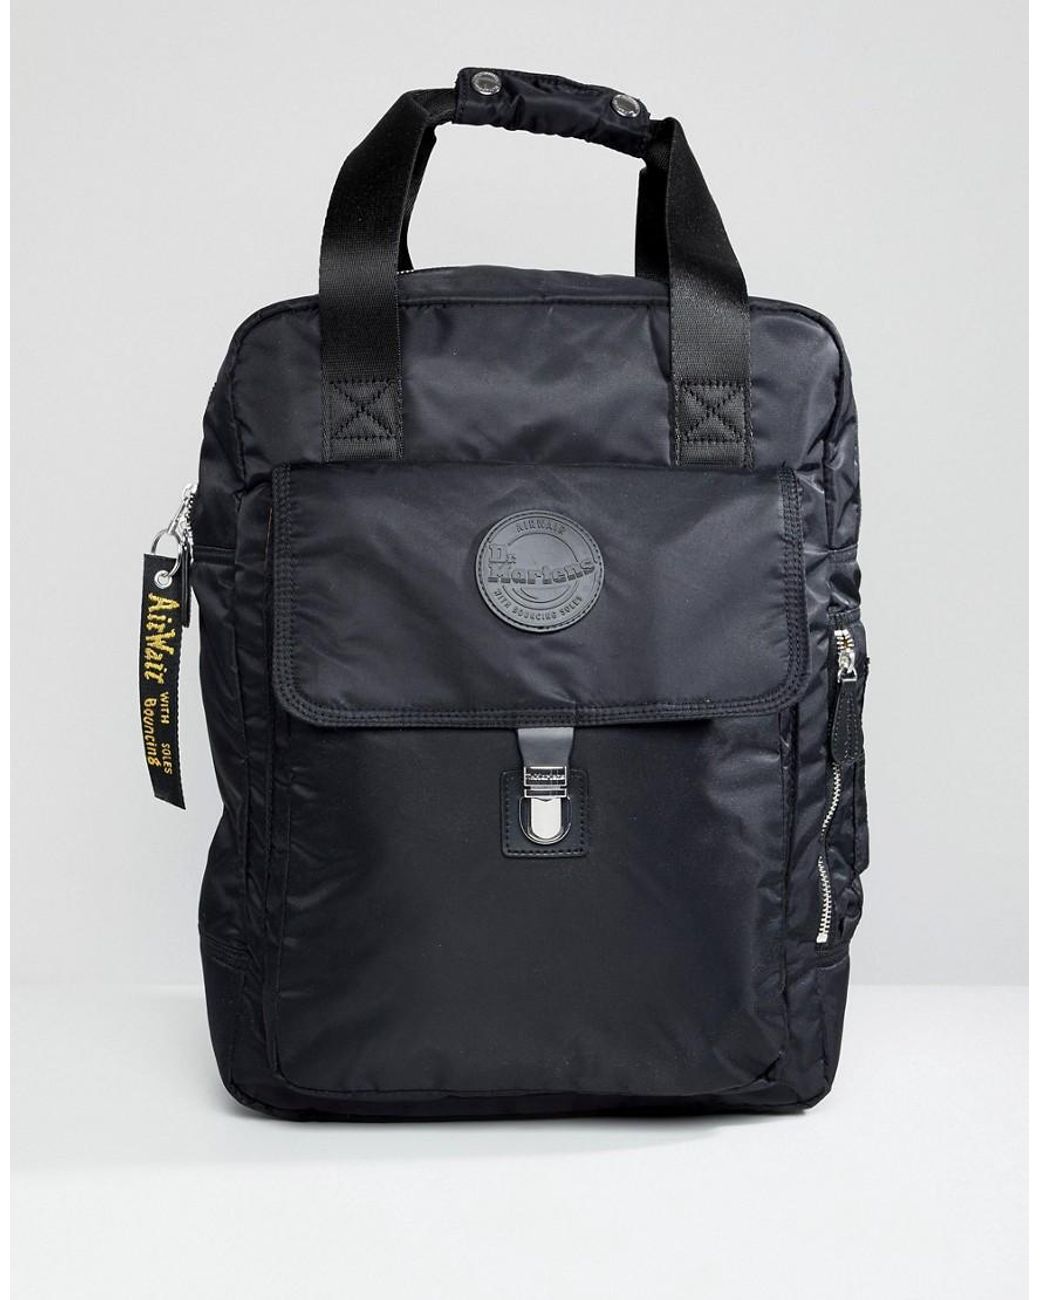 Dr. Martens Large Nylon Backpack in Black | Lyst Australia